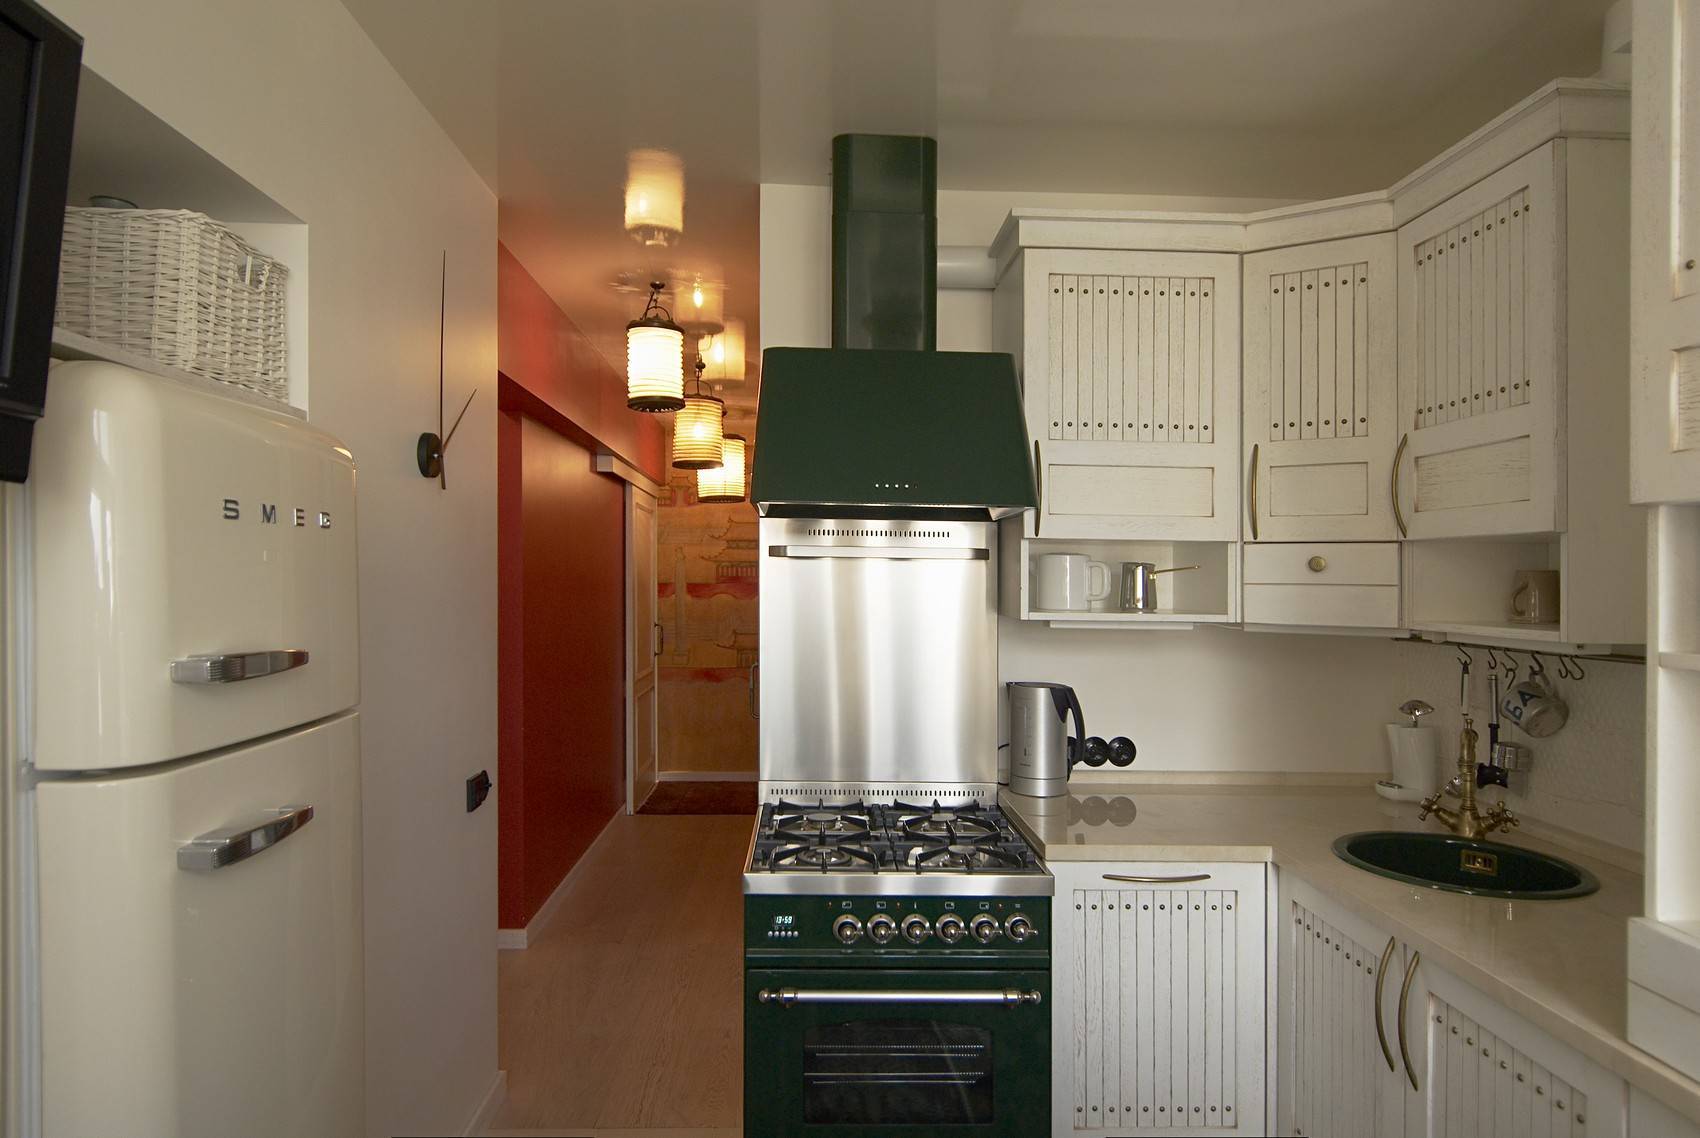 Угловая кухня для маленькой кухни 6 кв м (20 реальных фото): лучшие идеи и примеры